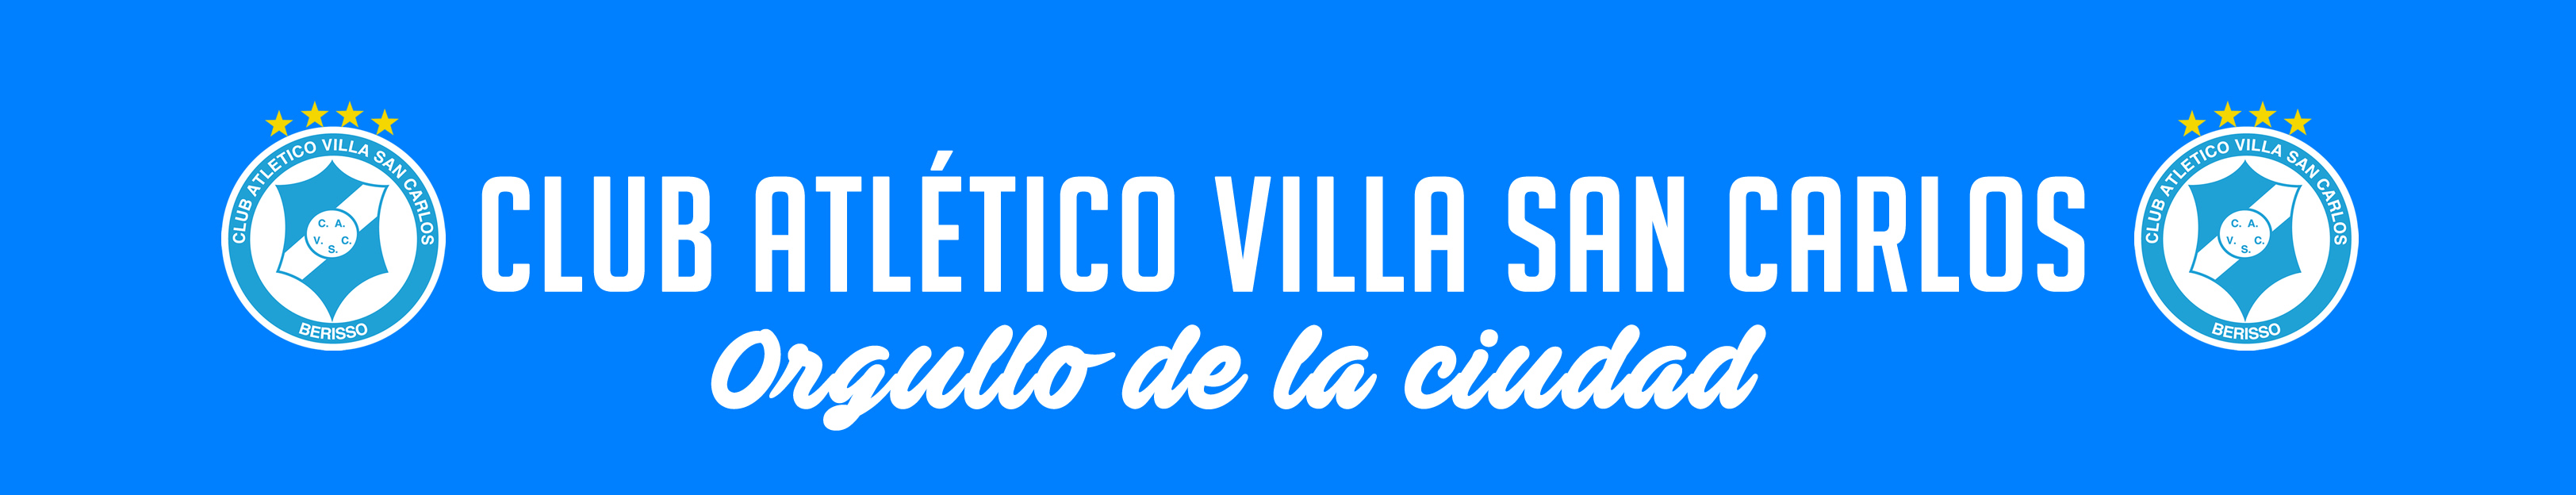 Historia Club Atlético Villa San Carlos